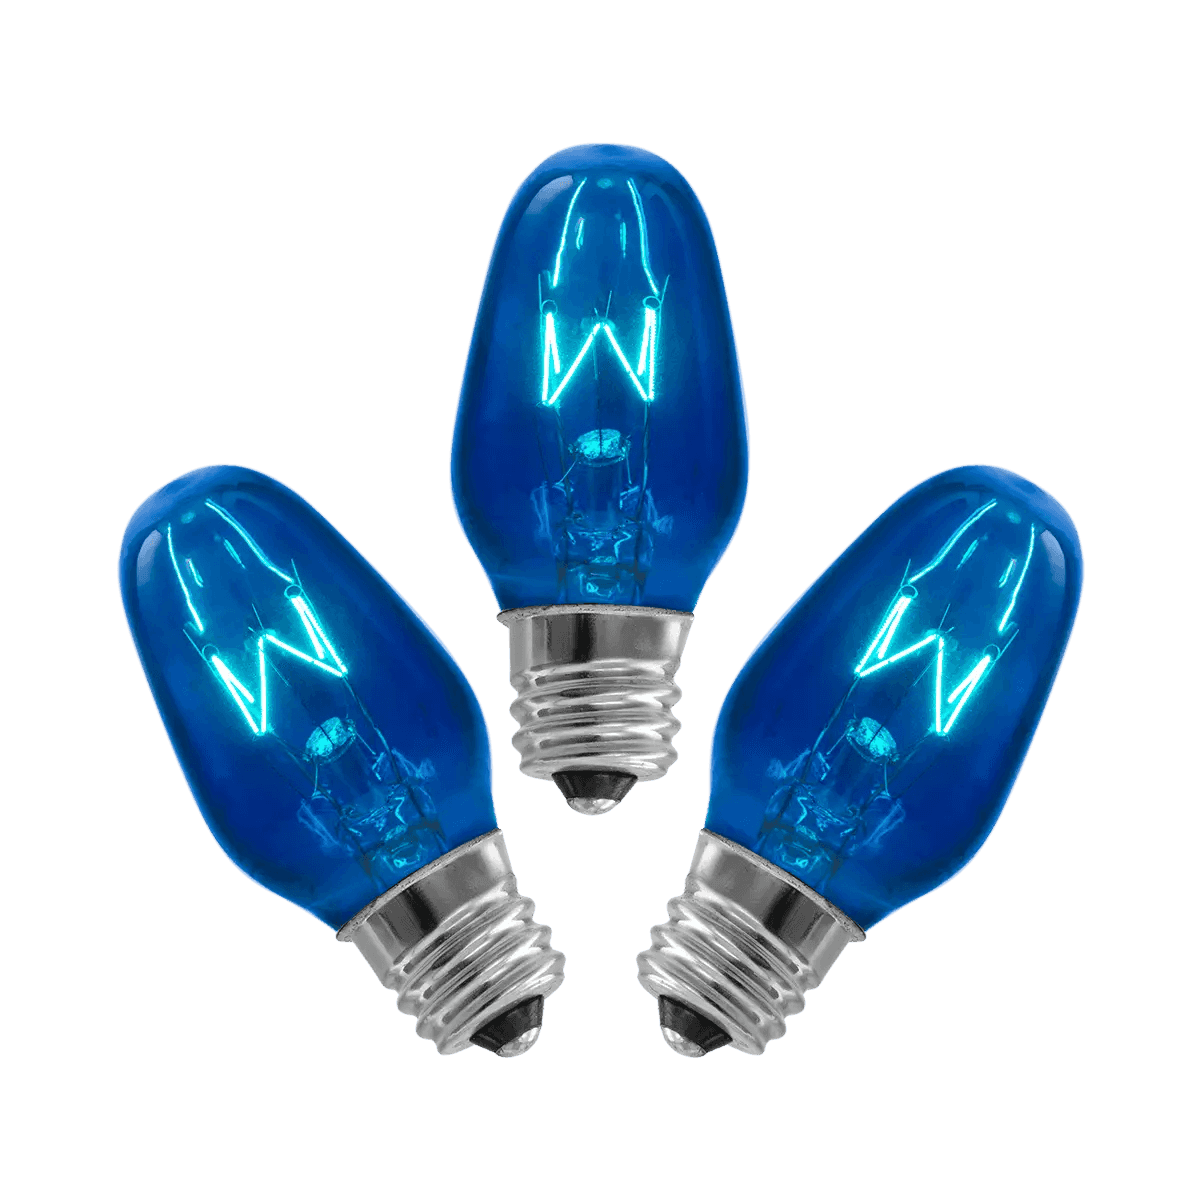 15 Watt Light Bulbs - 3 Pack – Blue